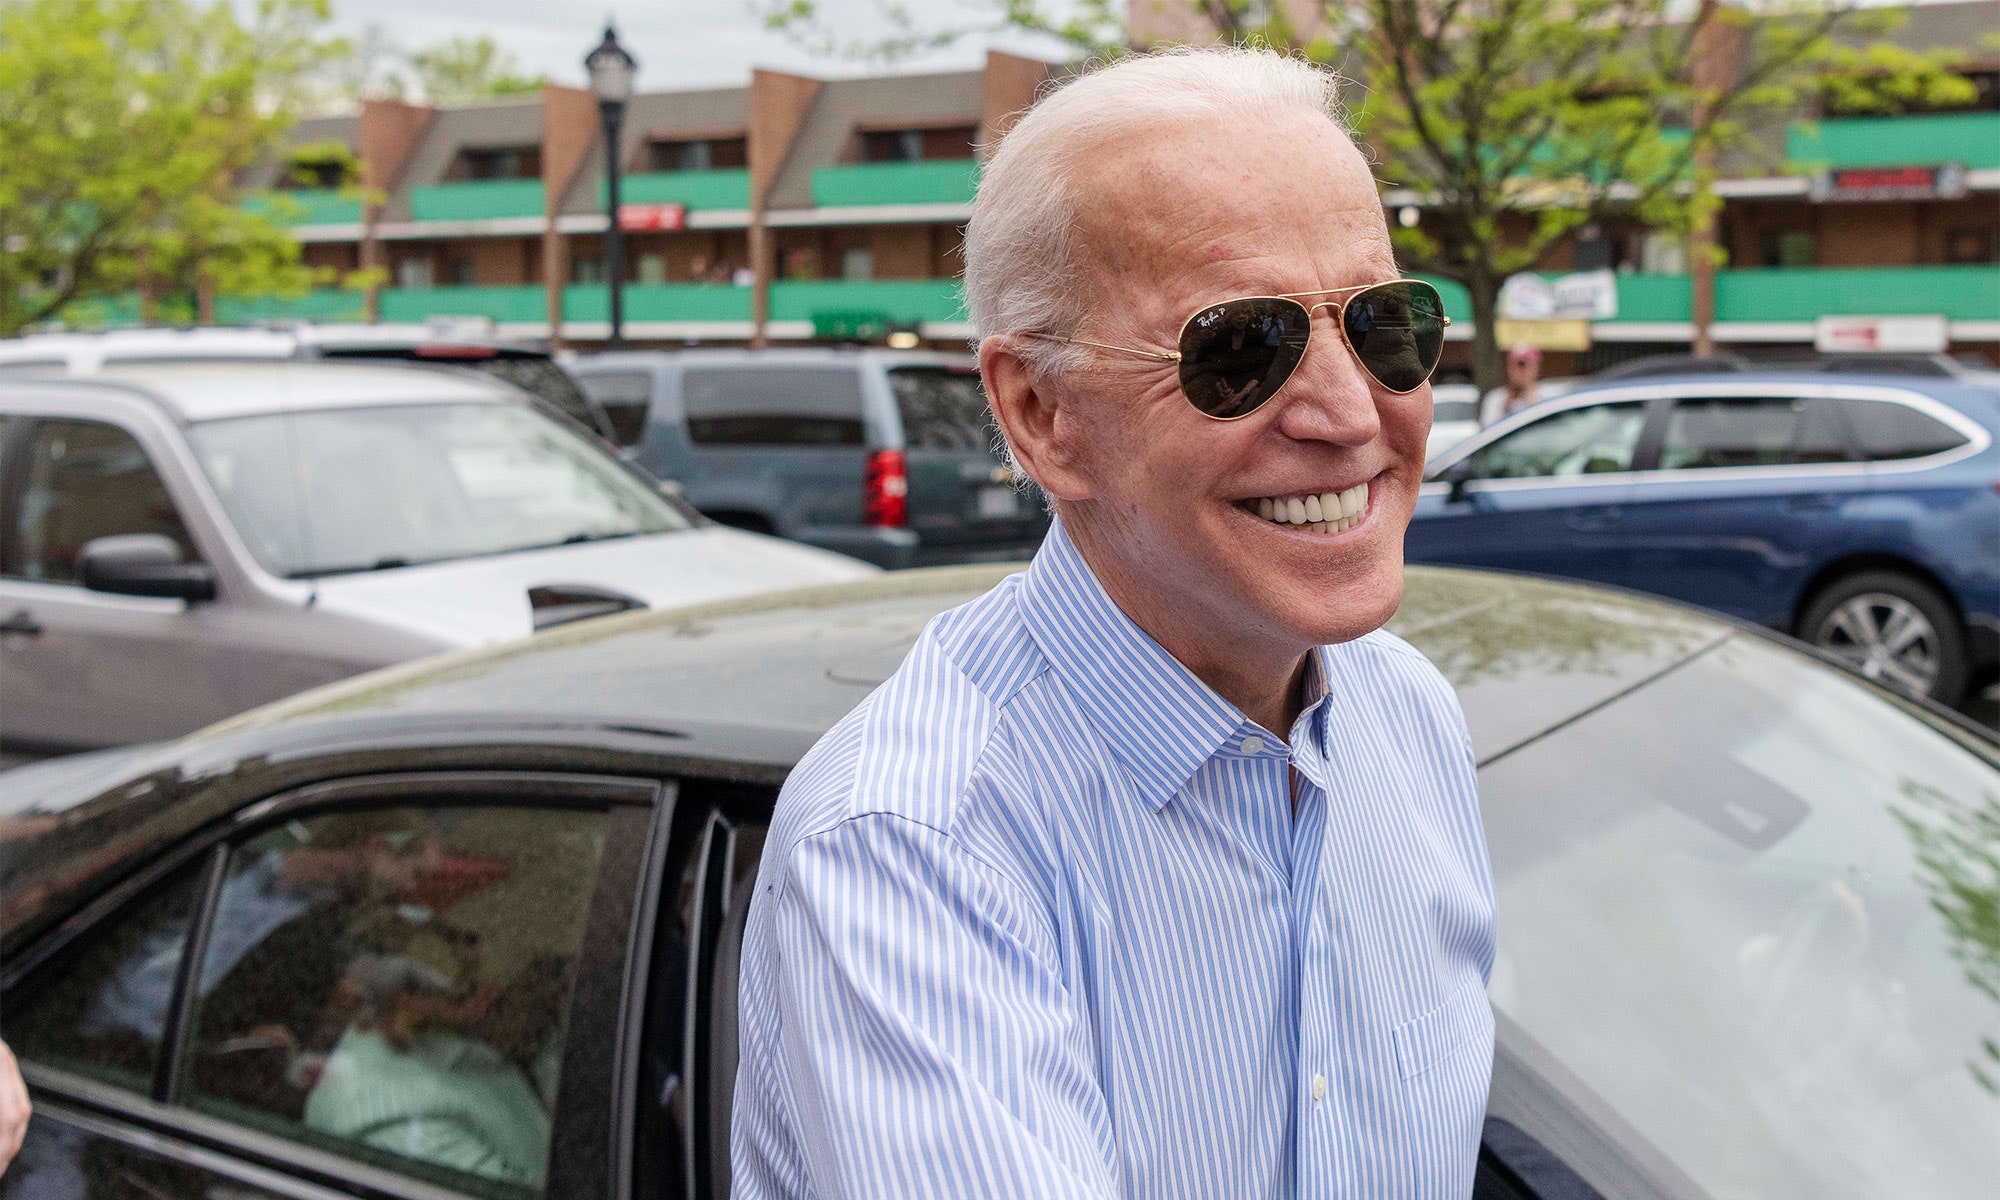 President Biden wears sunglasses, smiling outside.